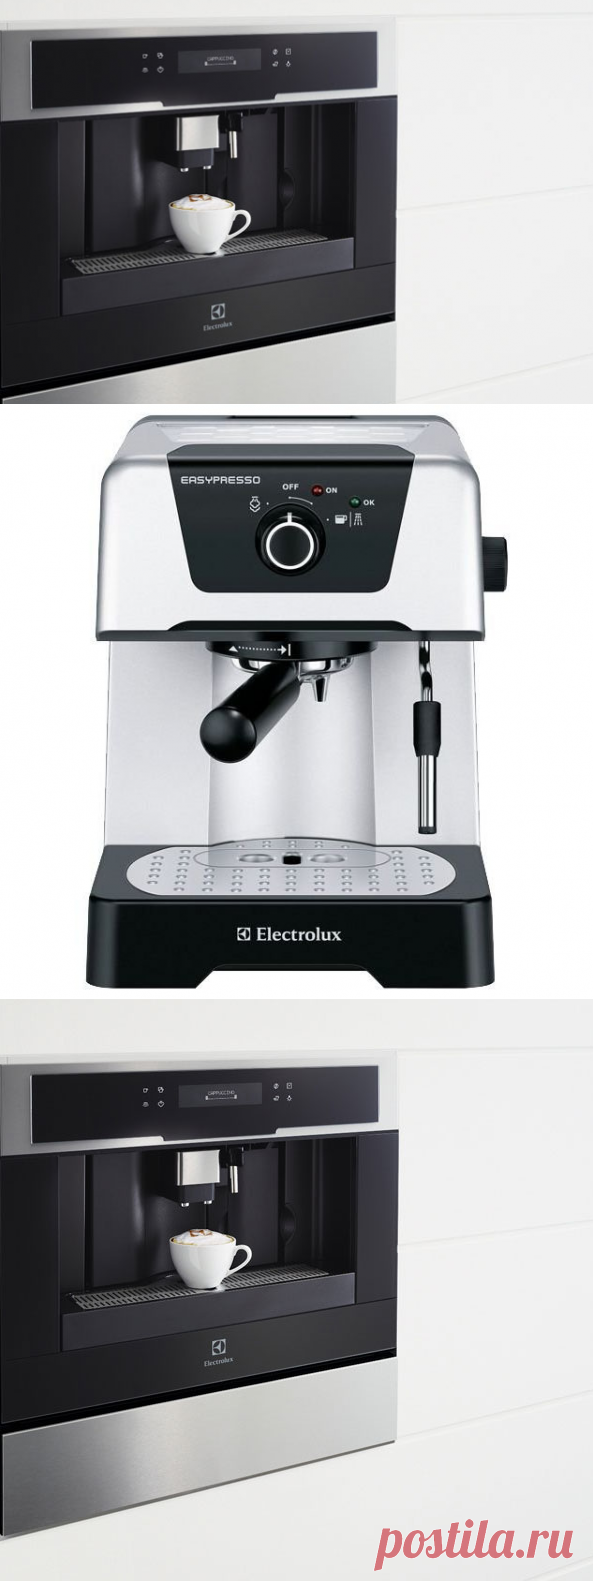 Обзор особенностей и преимуществ кофемашин Electrolux